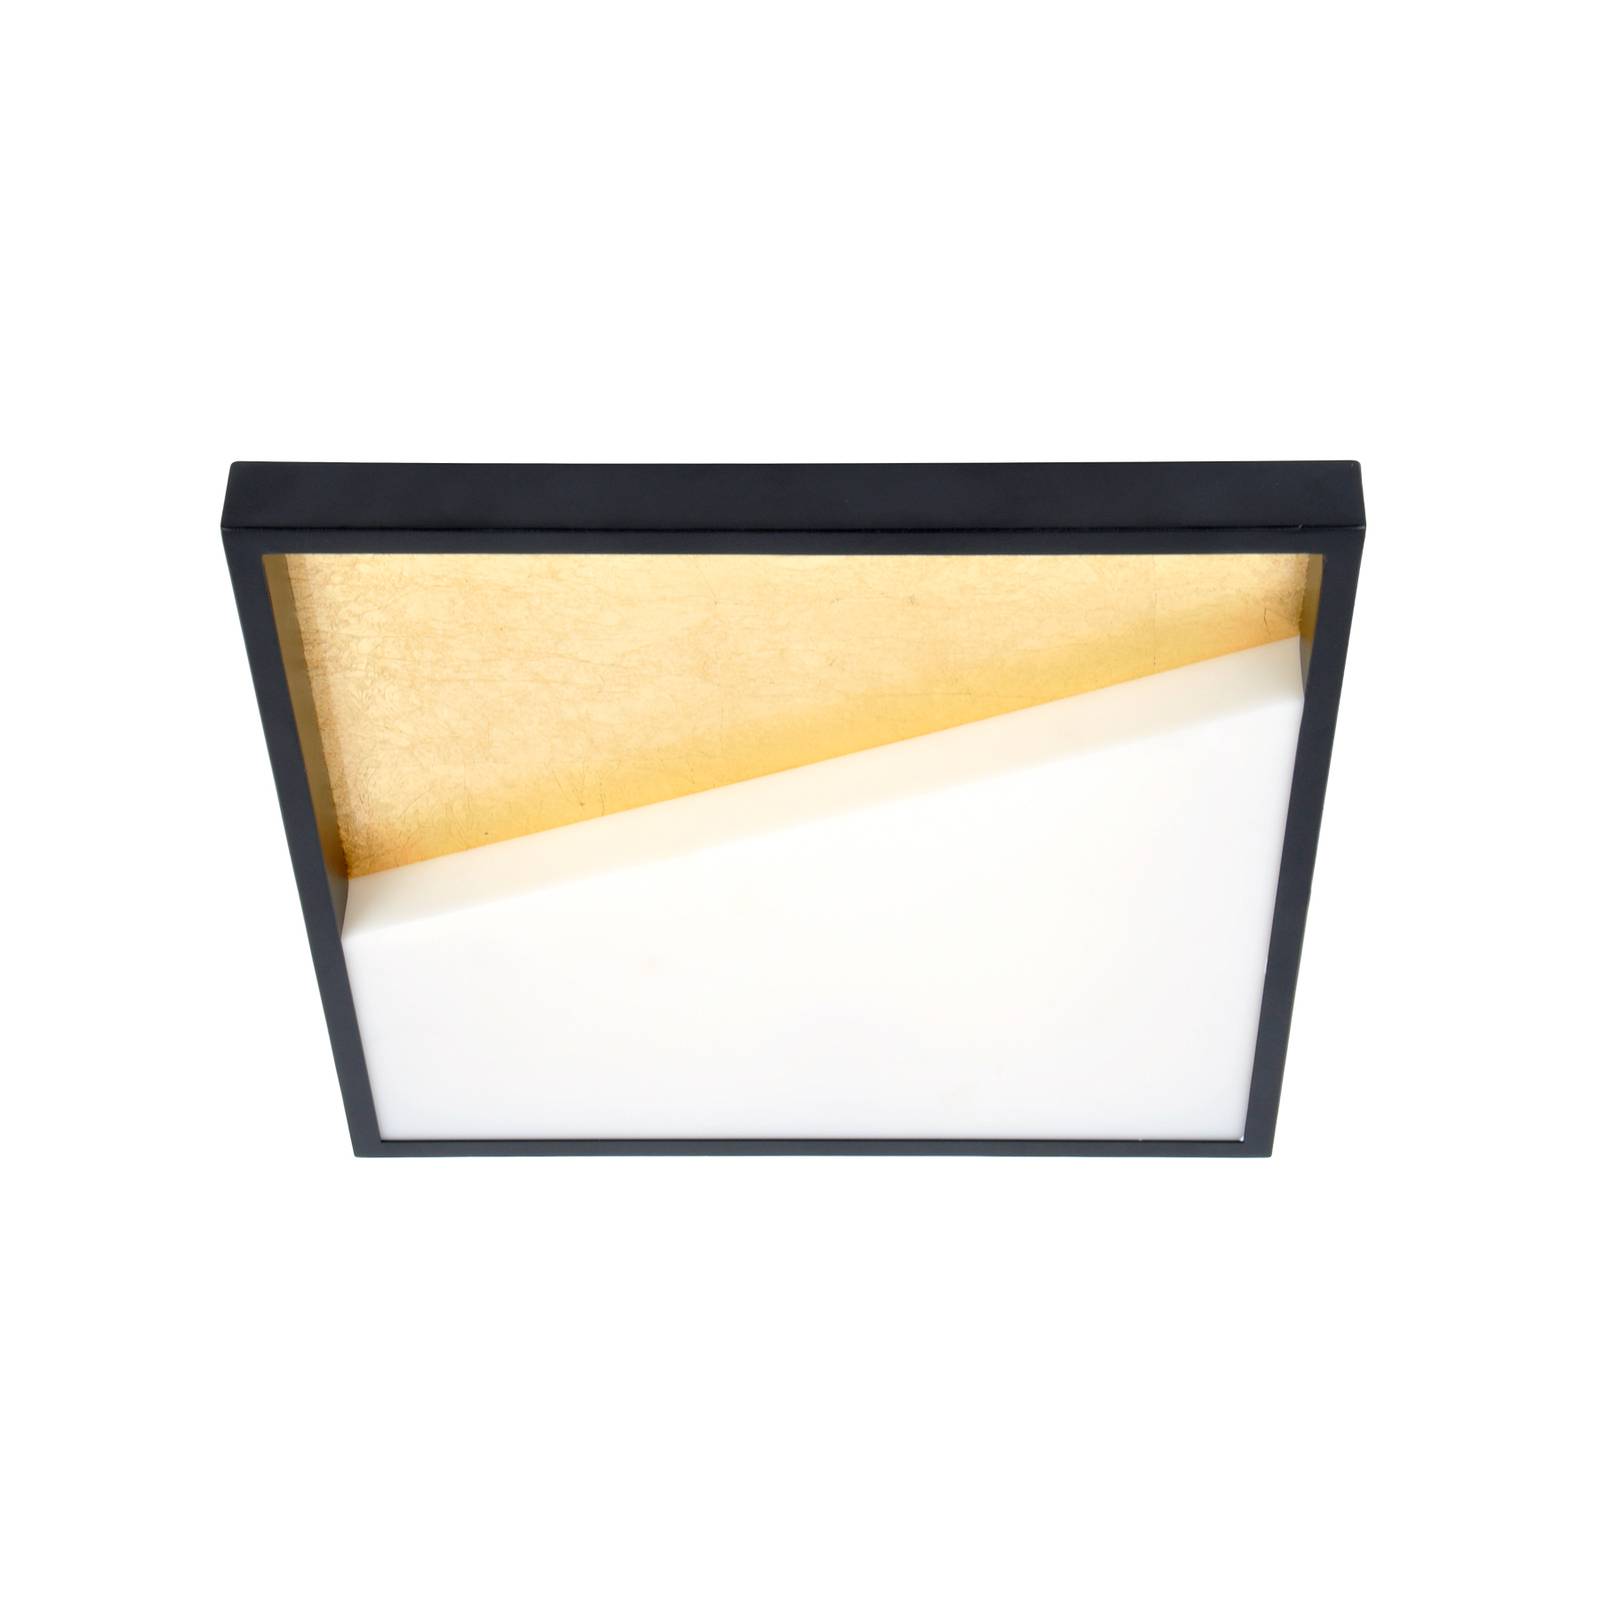 LED-Wandleuchte Vista, gold/schwarz, 40 x 40 cm von Eco-Light